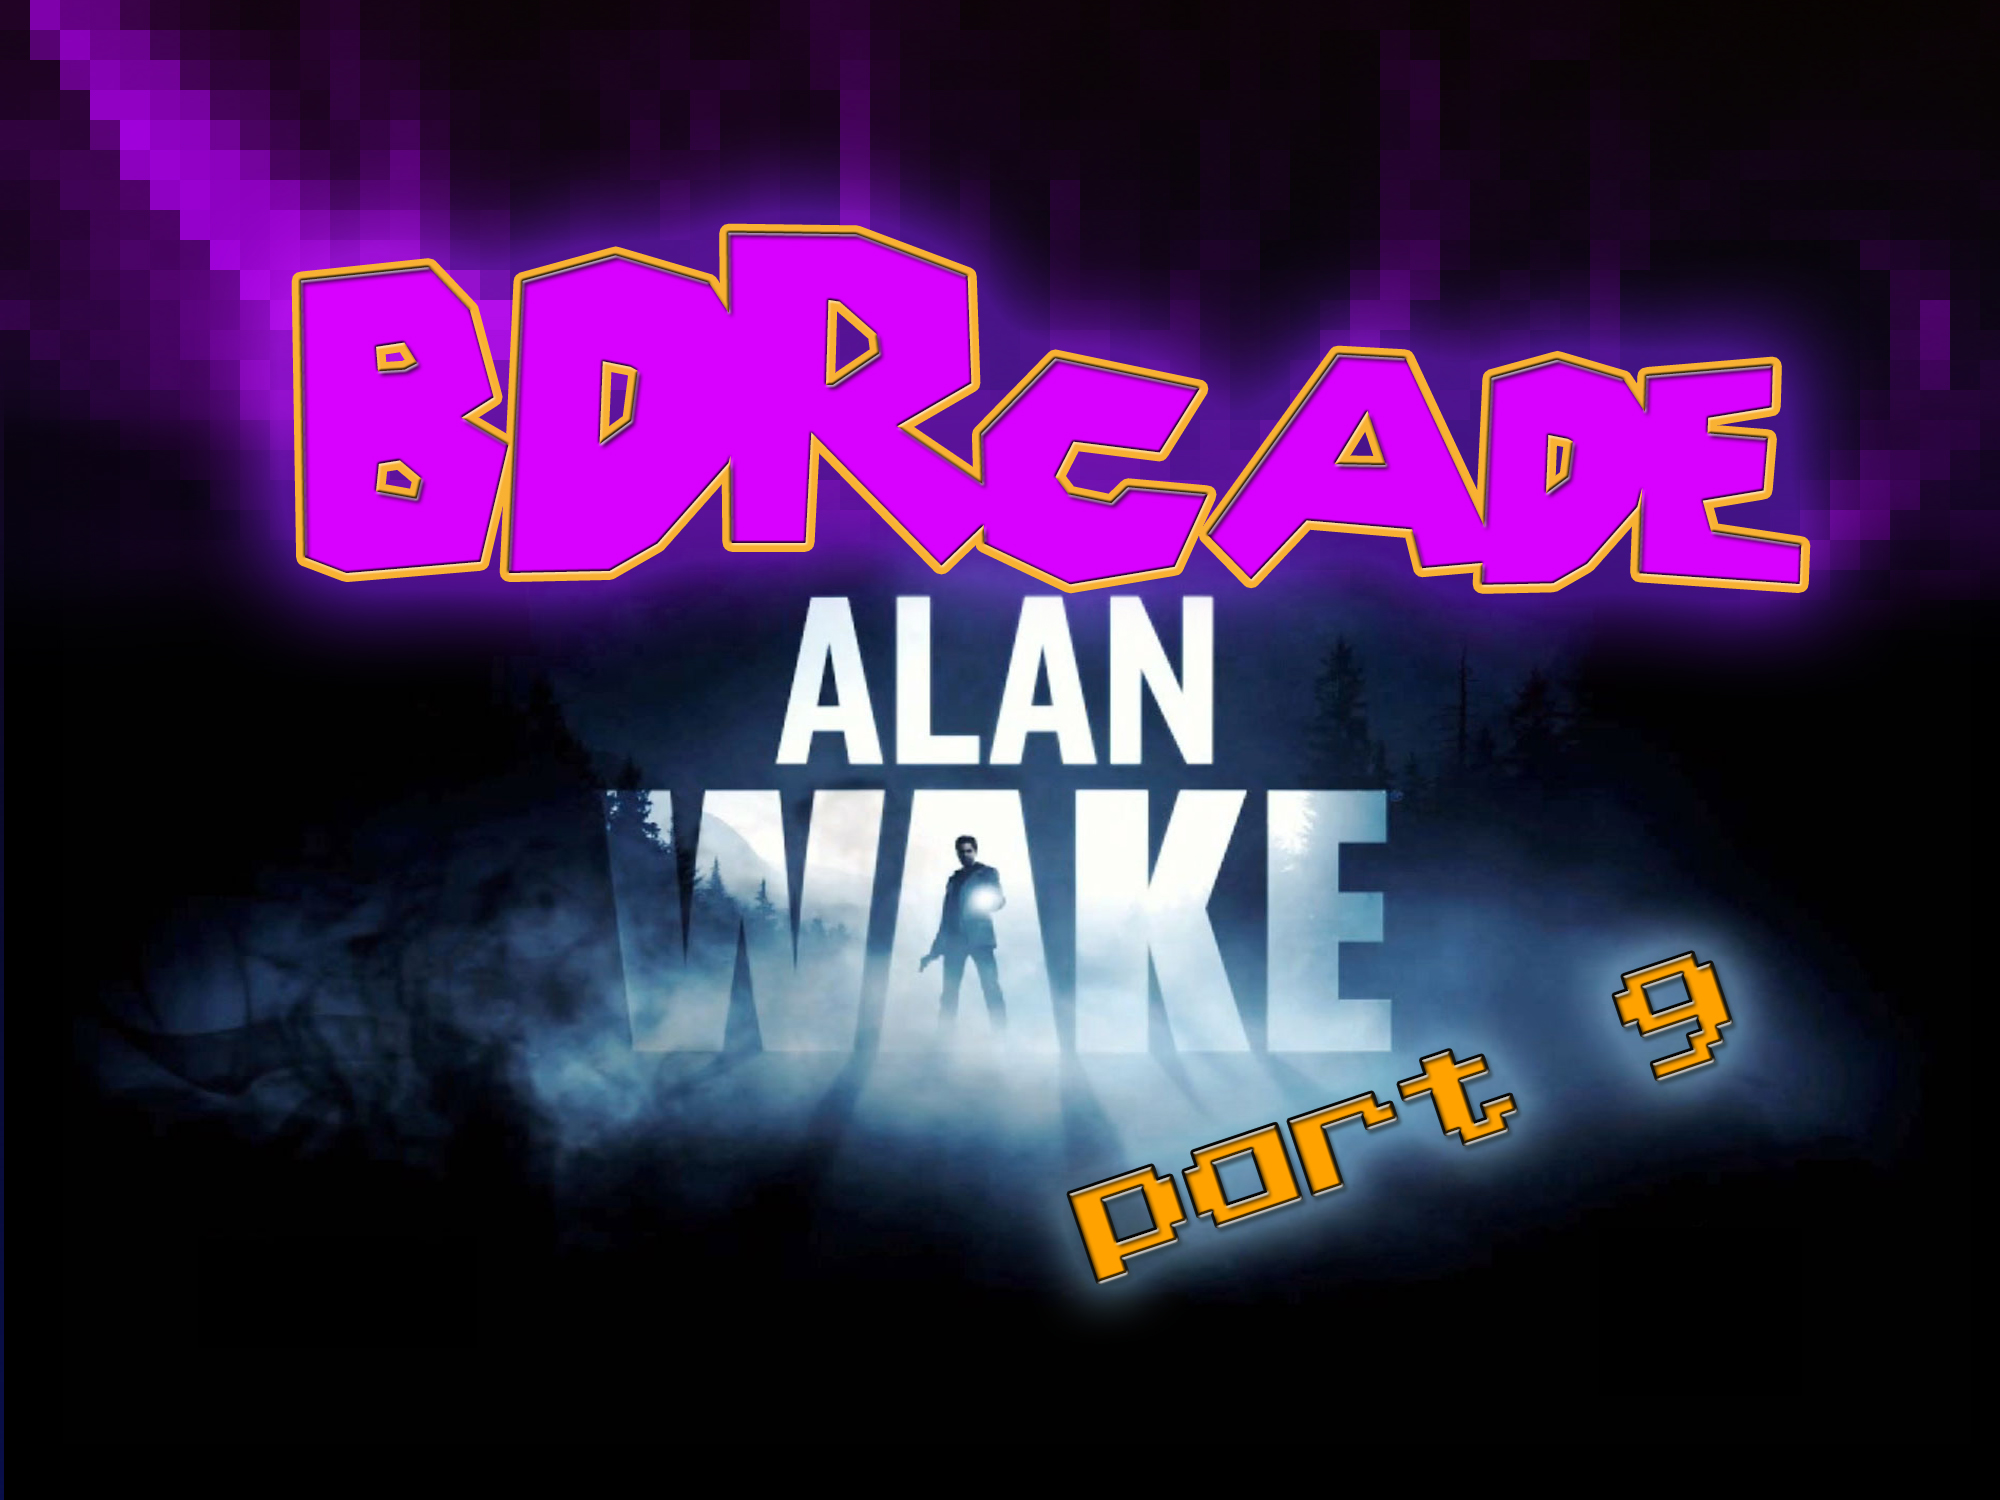 Alan Wake: You’re No James Patterson – Part 9 – BDRcade